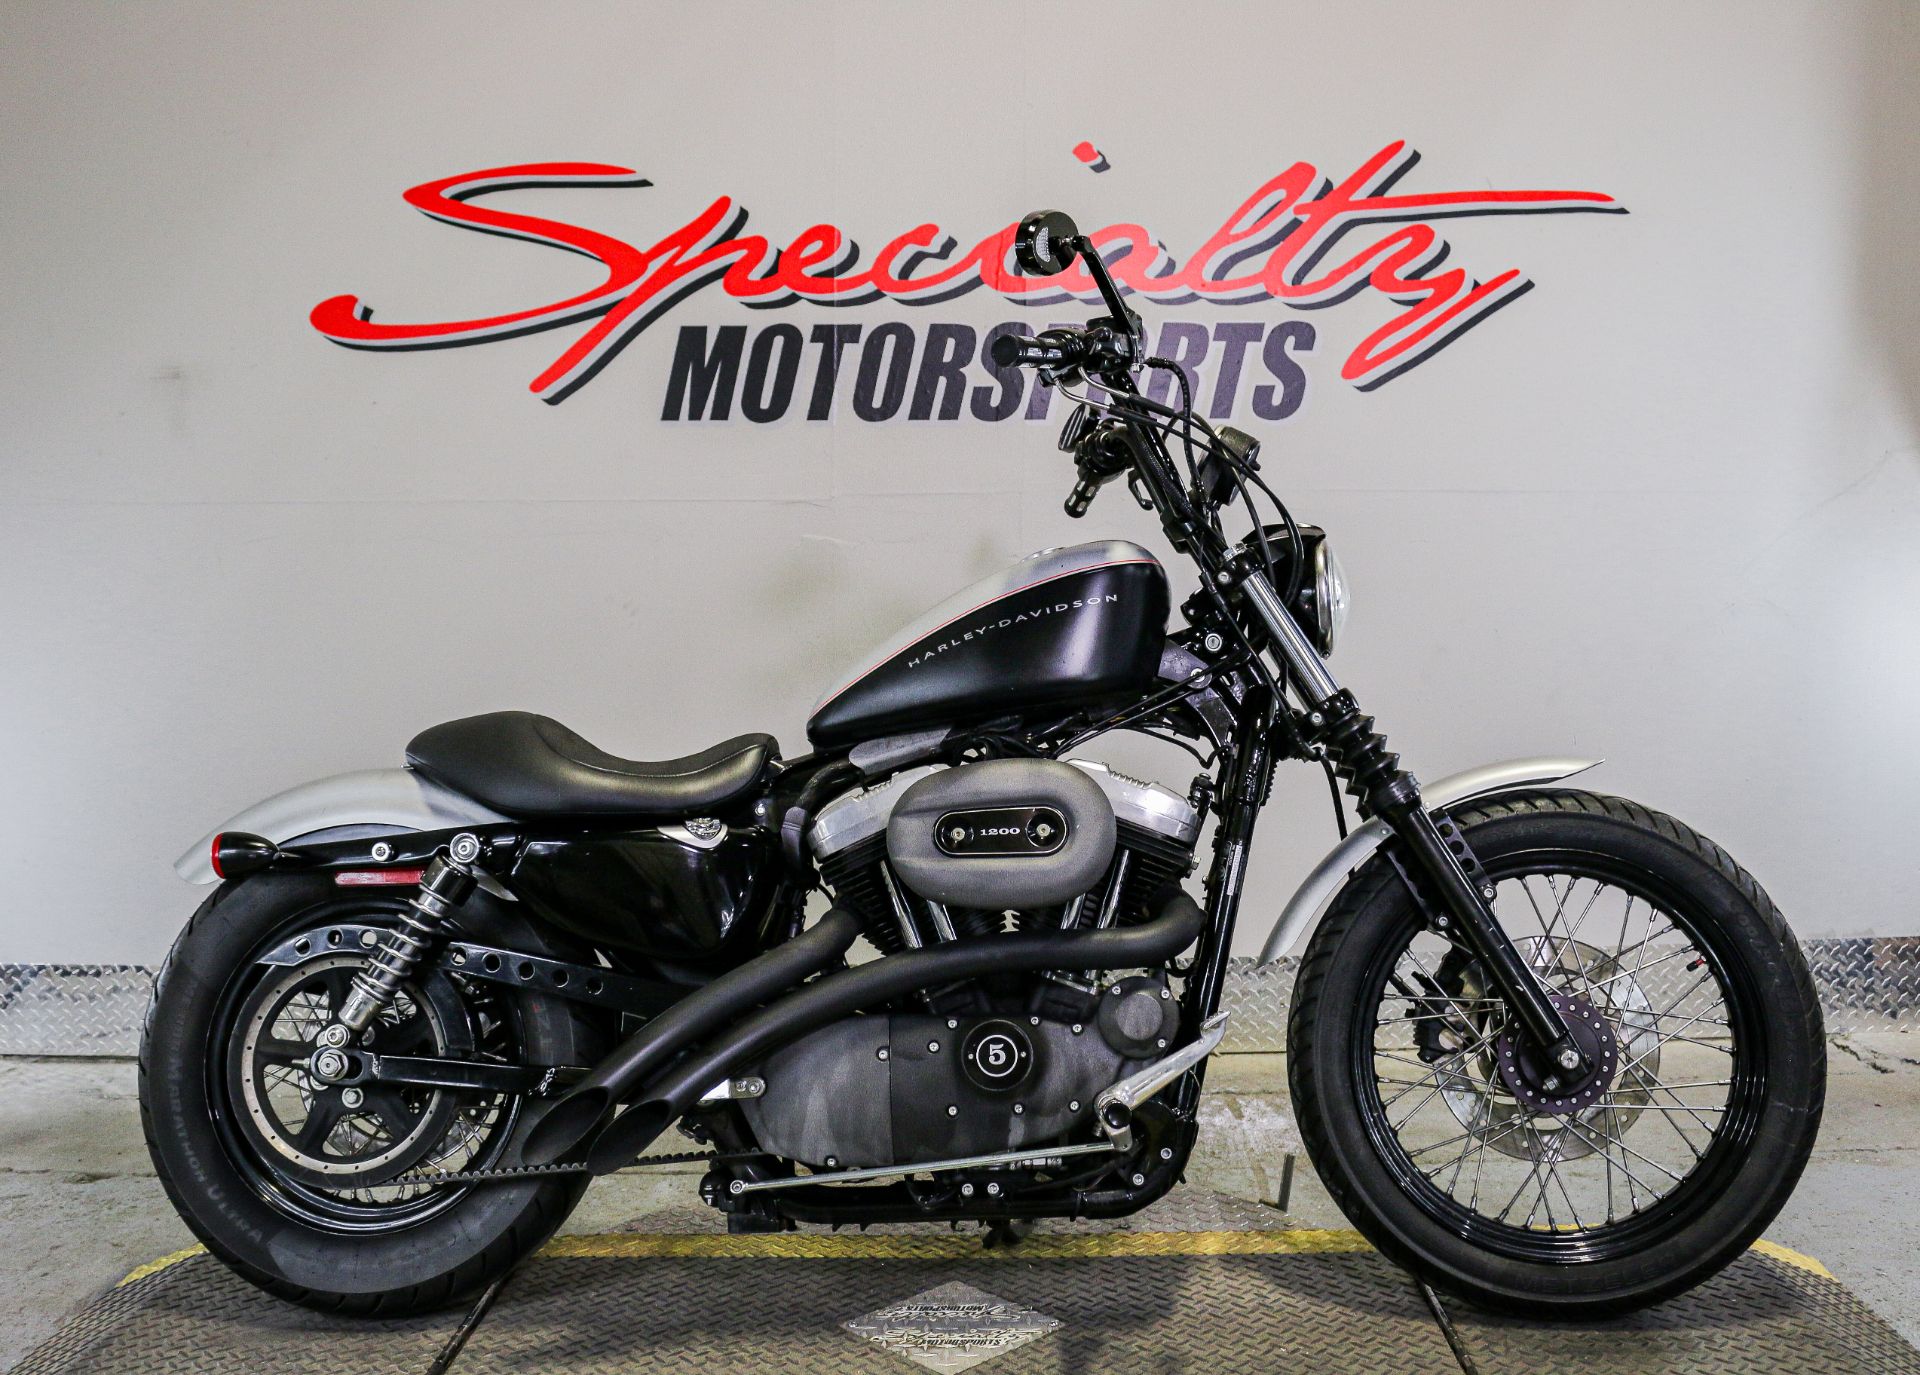 2007 Harley-Davidson Sportster® 1200 Nightster™ in Sacramento, California - Photo 1